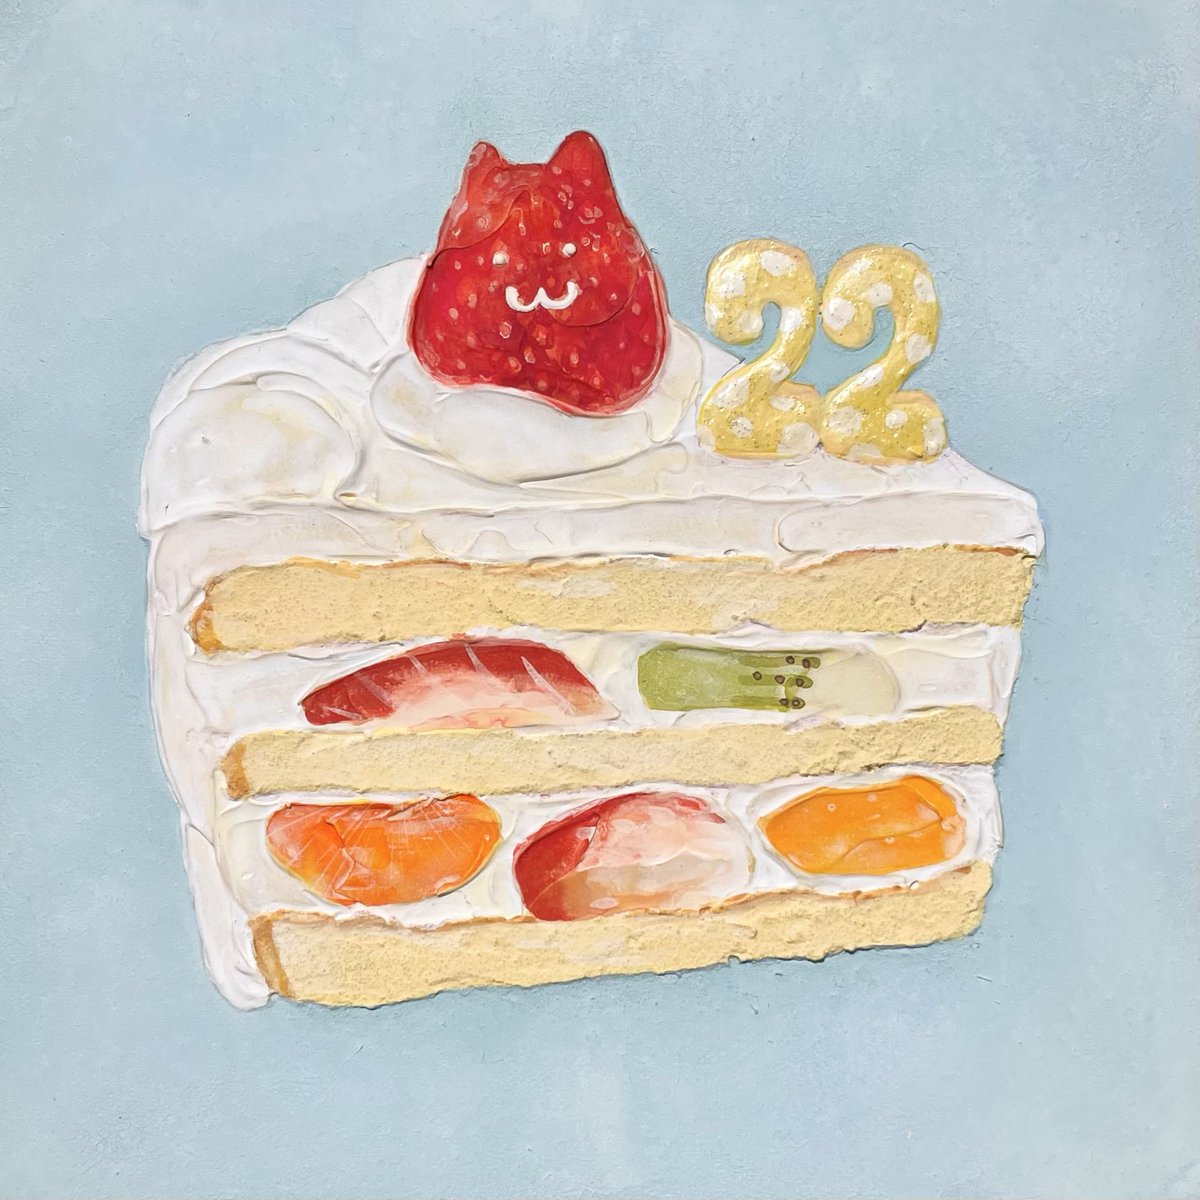 「ショートケーキと絵肌が好きです!:)#この際だからフォローしてみませんか 」|𝓝𝓪𝓽𝓼𝓾𝓶𝓲🍓Natsumi Takahashiのイラスト